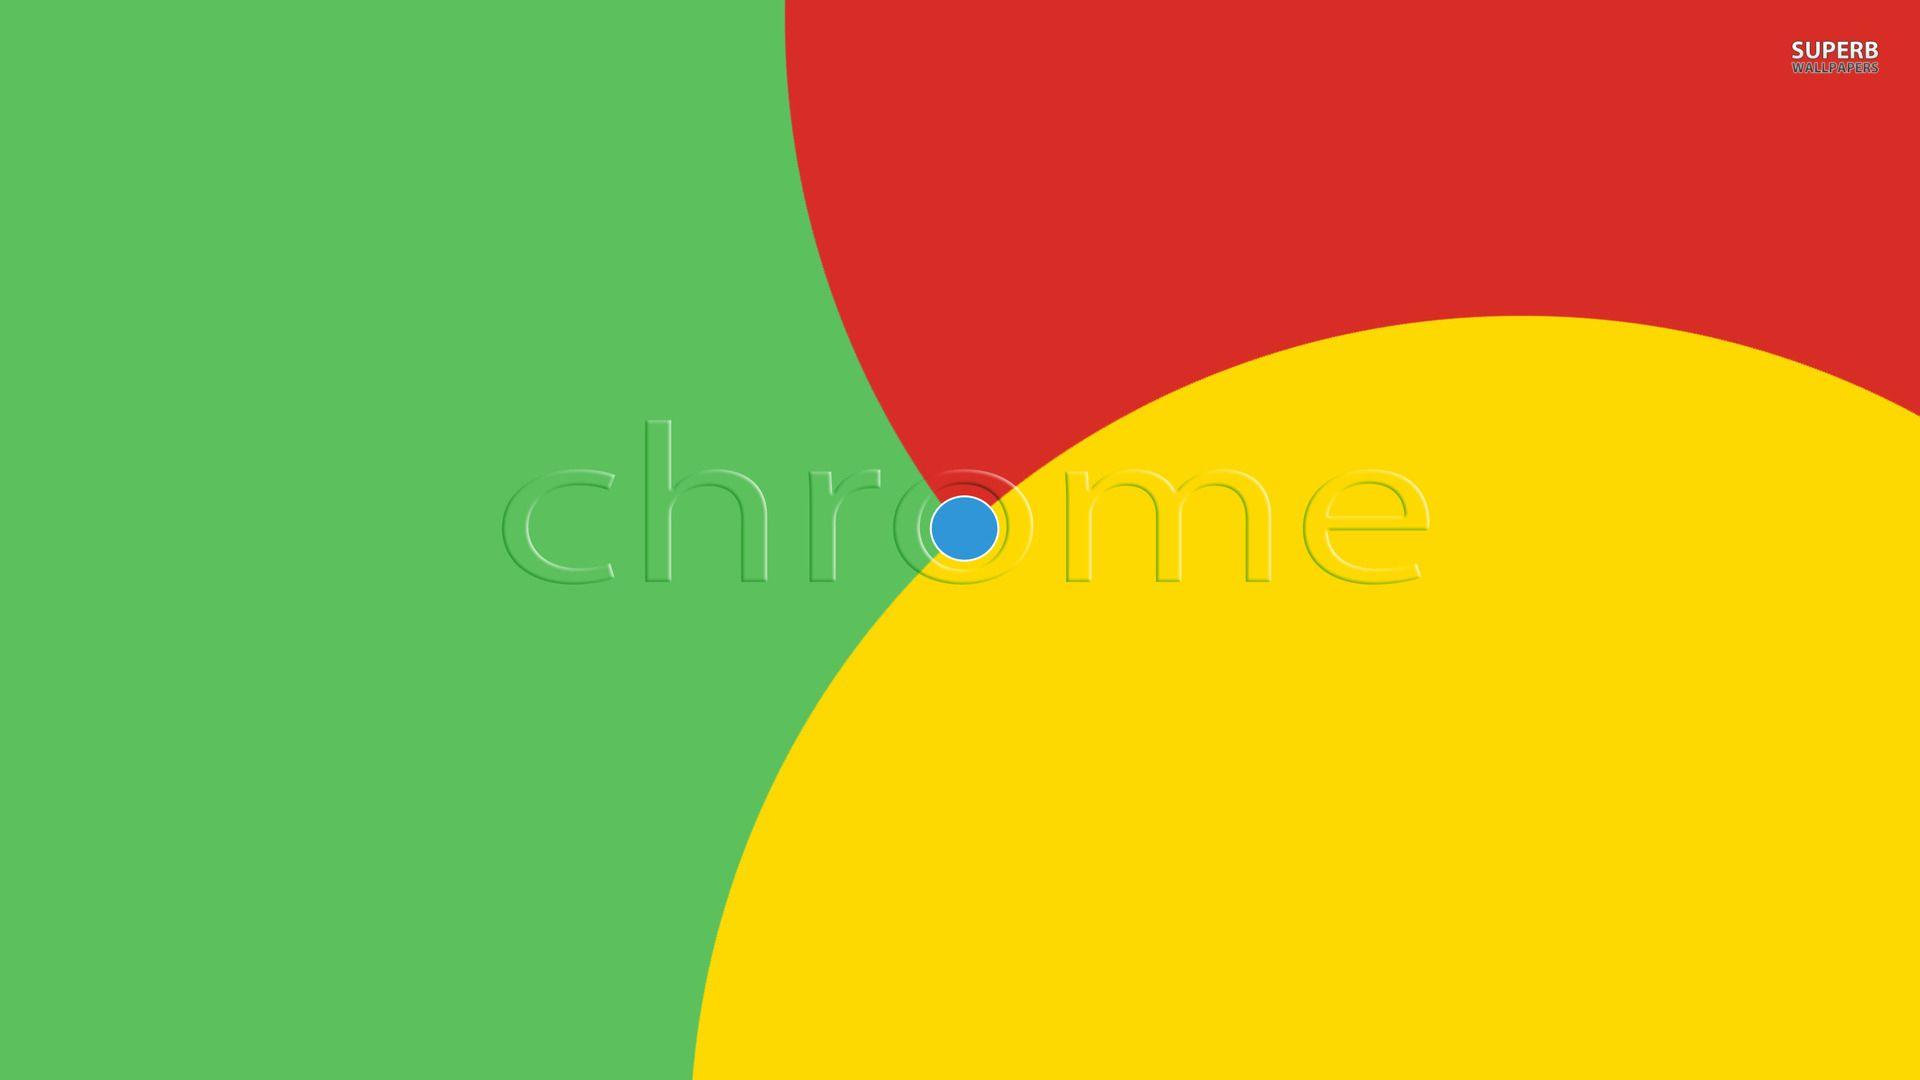 Google Chrome wallpaper wallpaper - #